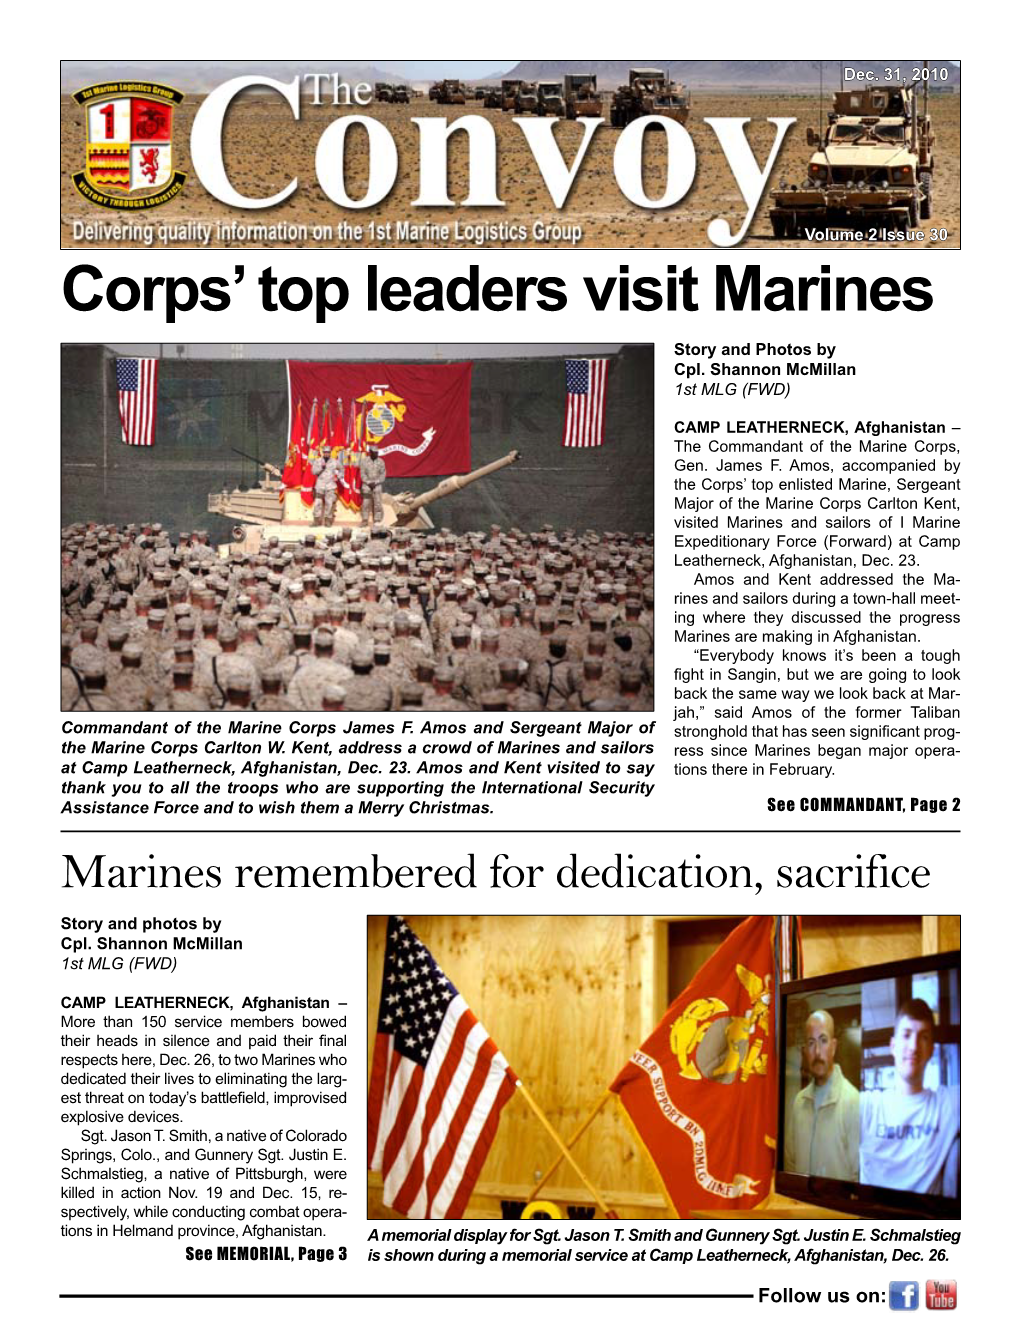 Corps' Top Leaders Visit Marines